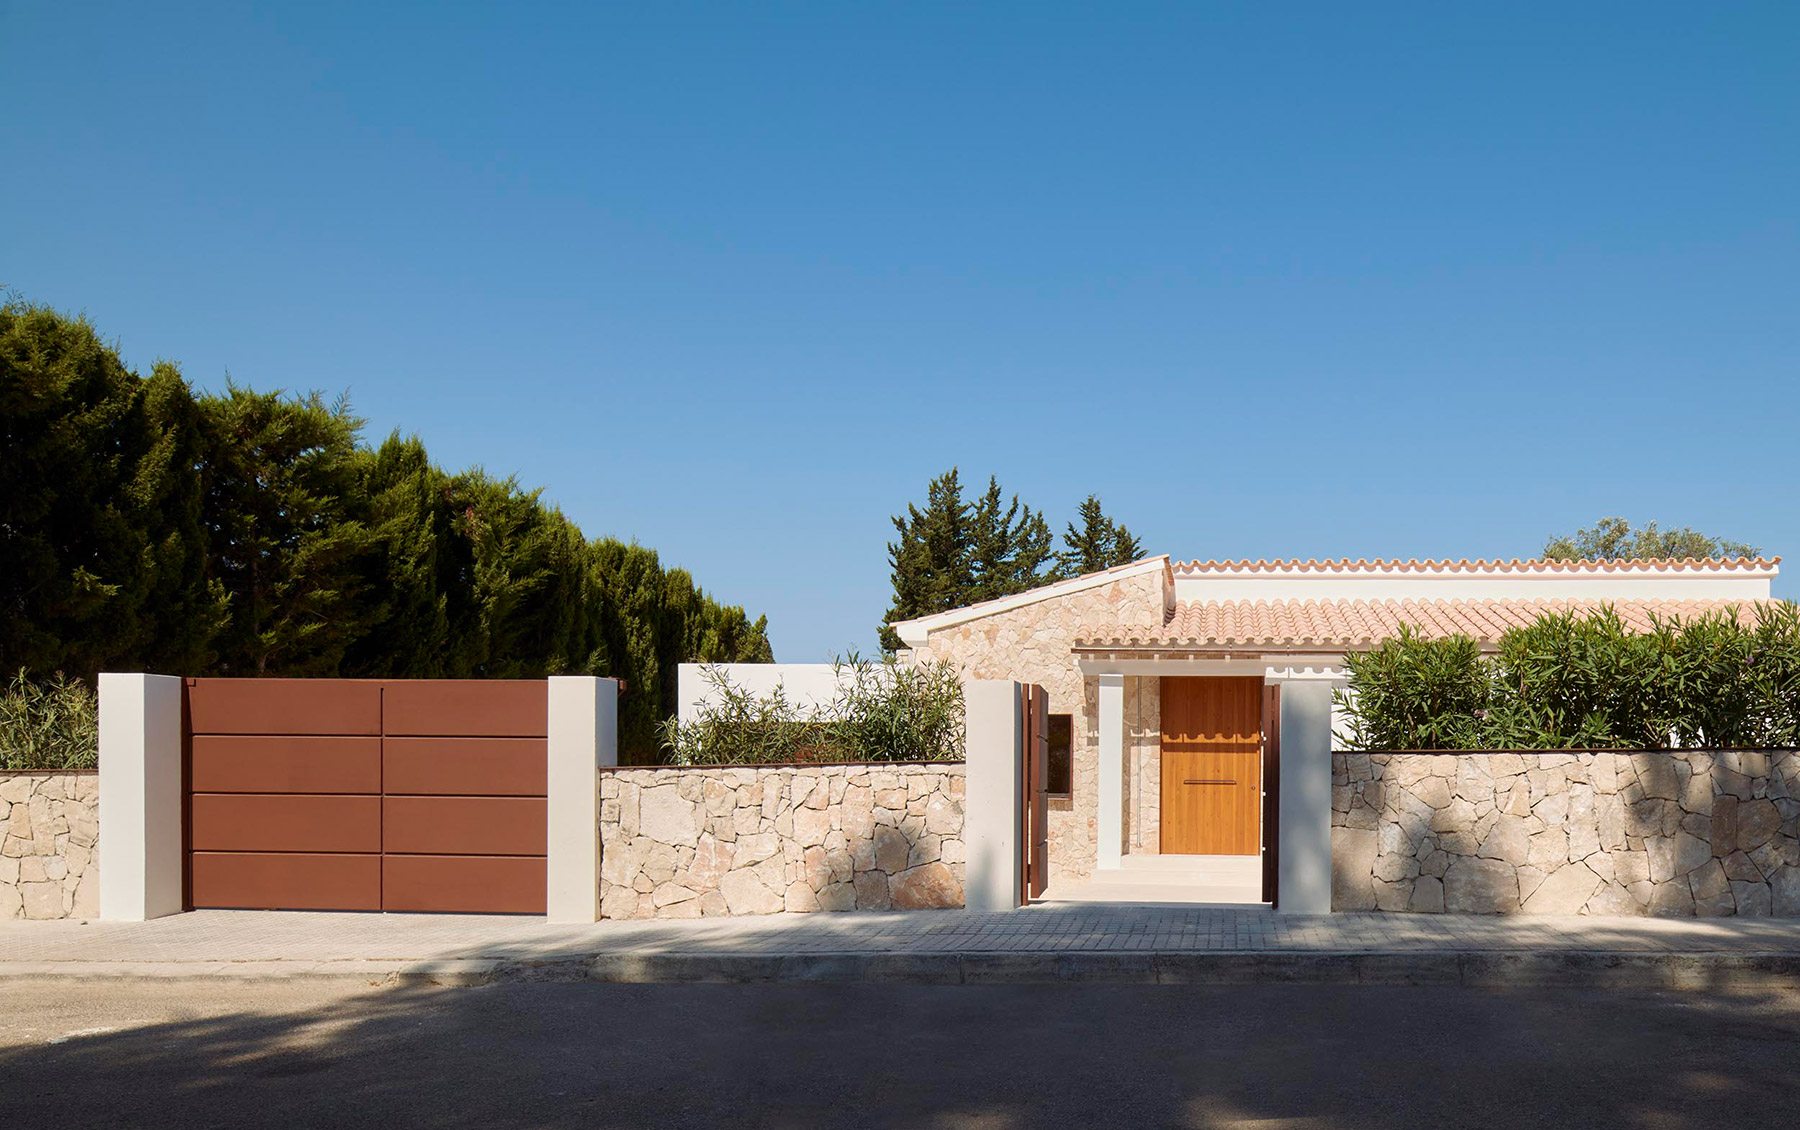 Juan David Martínez Jofre diseña una vivienda integrada en el paisaje, prolongando la cromática terrosa con la vegetación mediterránea autóctona